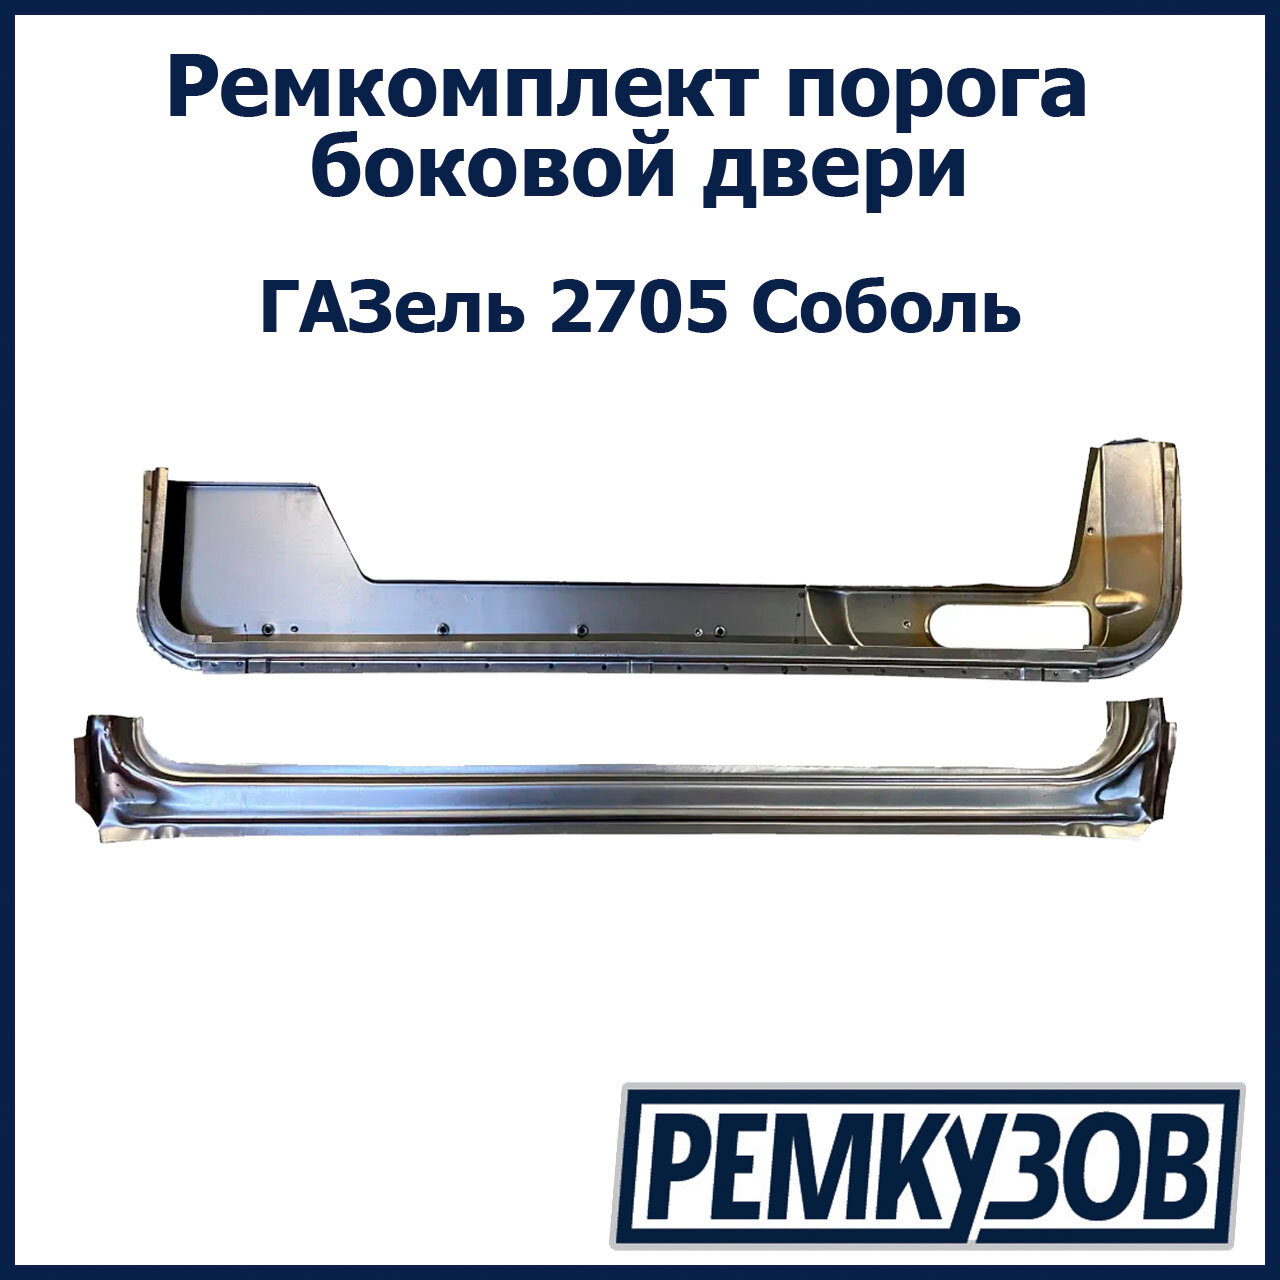 Ремкомплект порога боковой двери ГАЗель 2705 Соболь